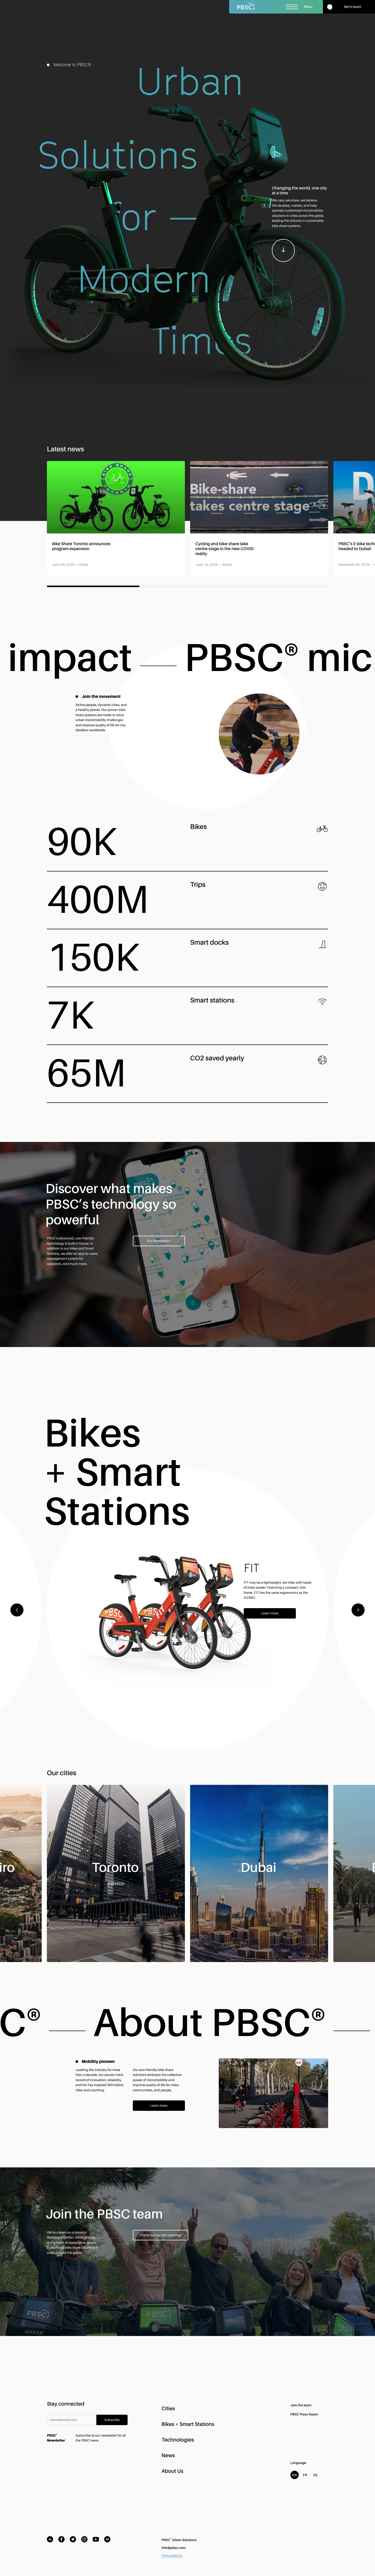 PBSC共享单车网站设计